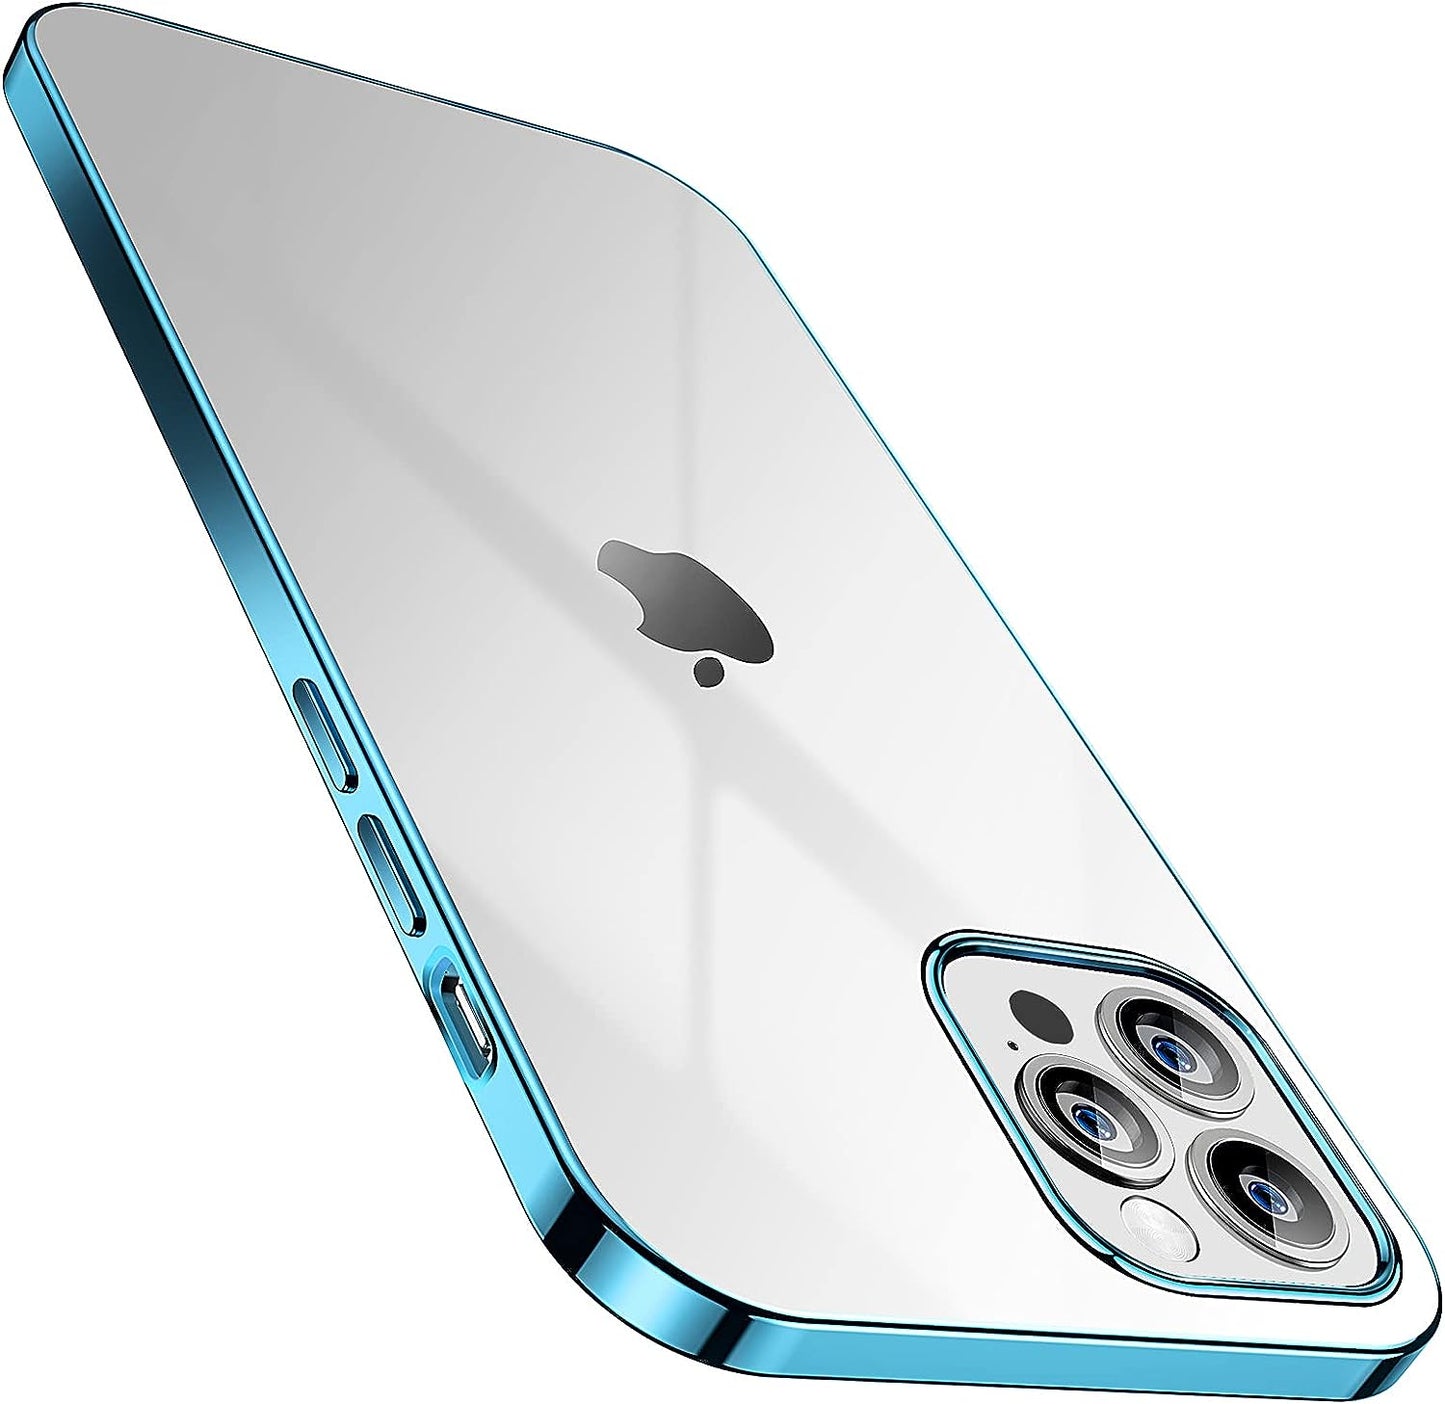 SMARTDEVIL Coque iPhone 12 Pro Max, Coque iPhone 12 Pro Max Transparente, AIR Cushion, Bumper Renforcé en TPU, Dos en PC, Protection Coin, Compatible con iPhone 12 Pro Max - Argent